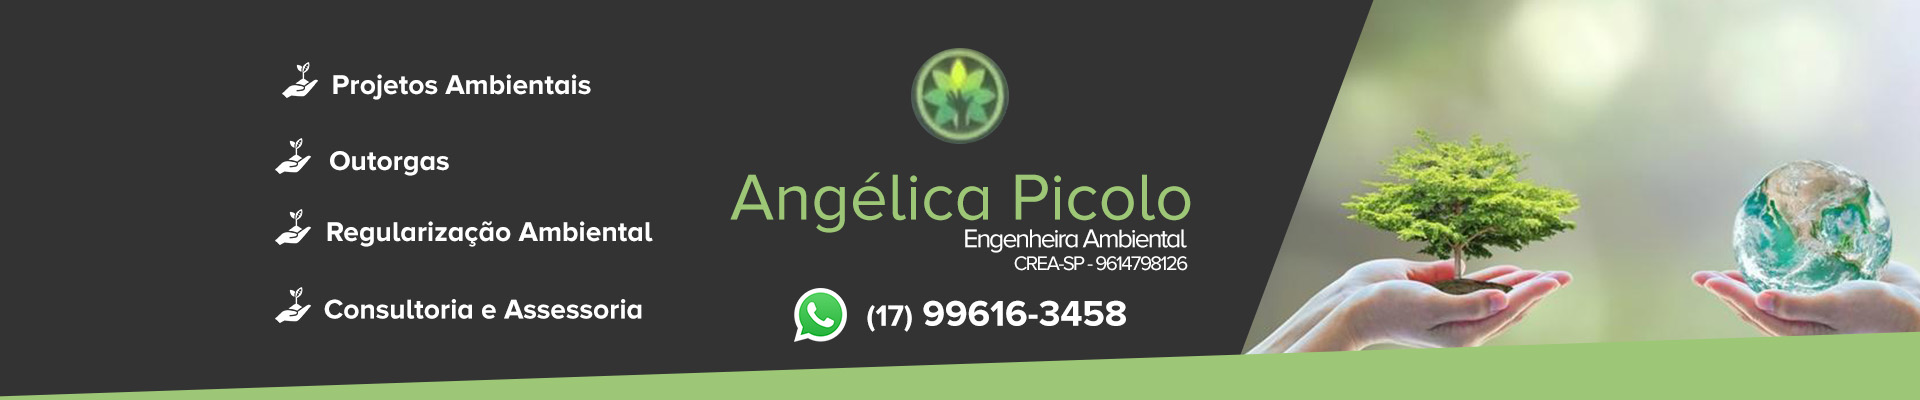 Angélica Picolo - Engenheira Ambiental